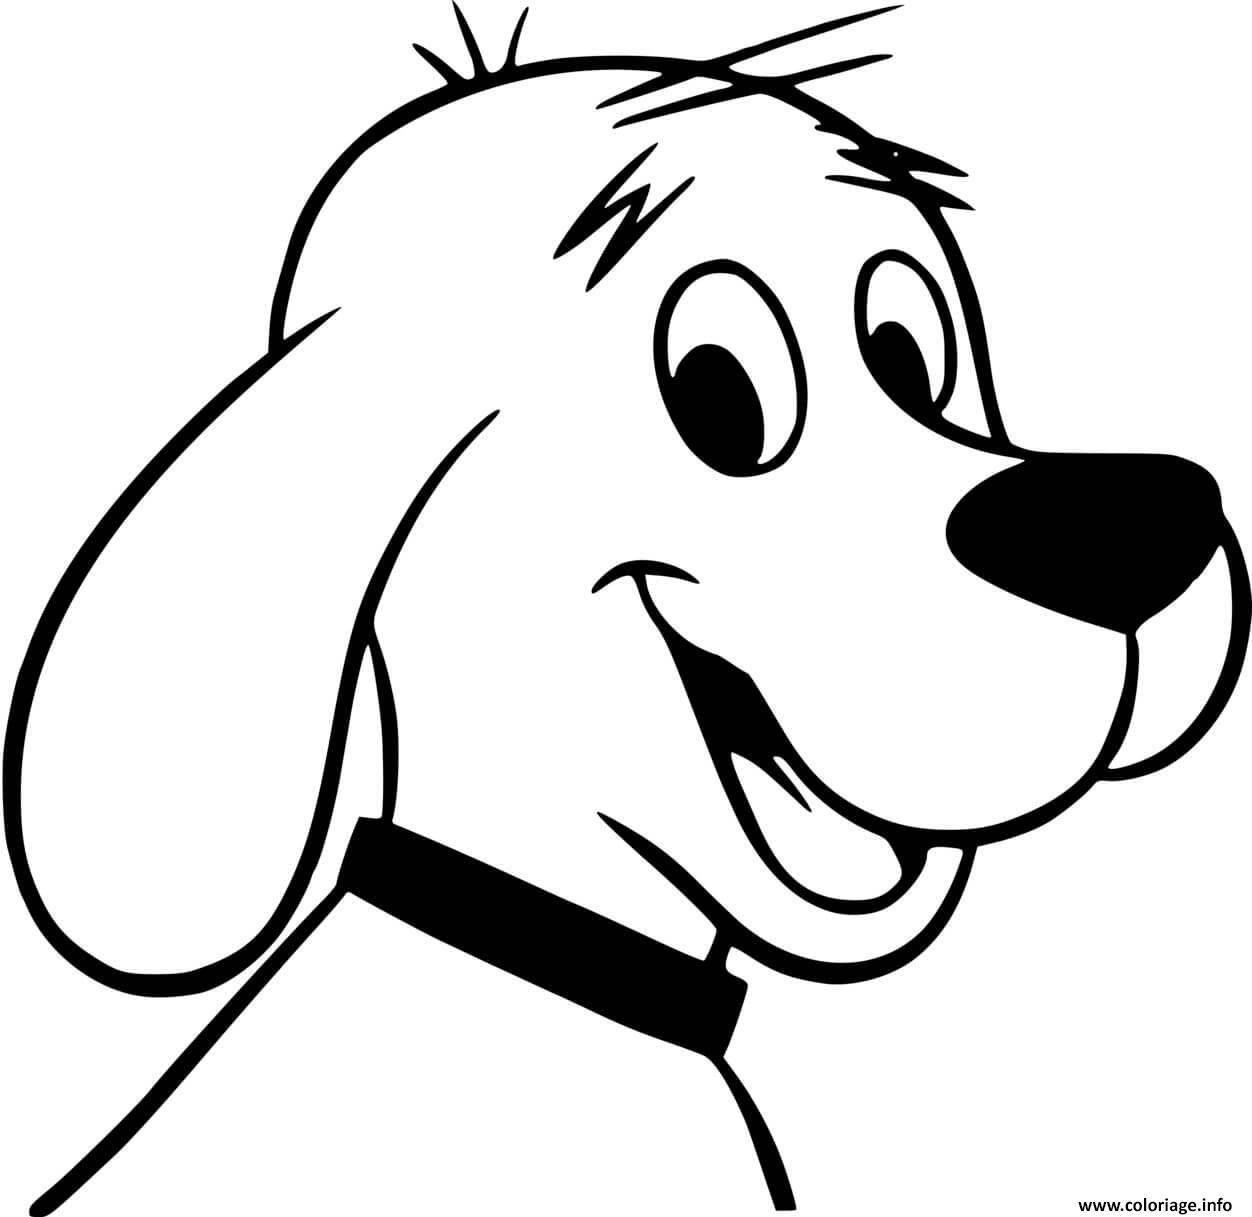 Dessin Clifford le chien rouge 2021 dessin anime Coloriage Gratuit à Imprimer